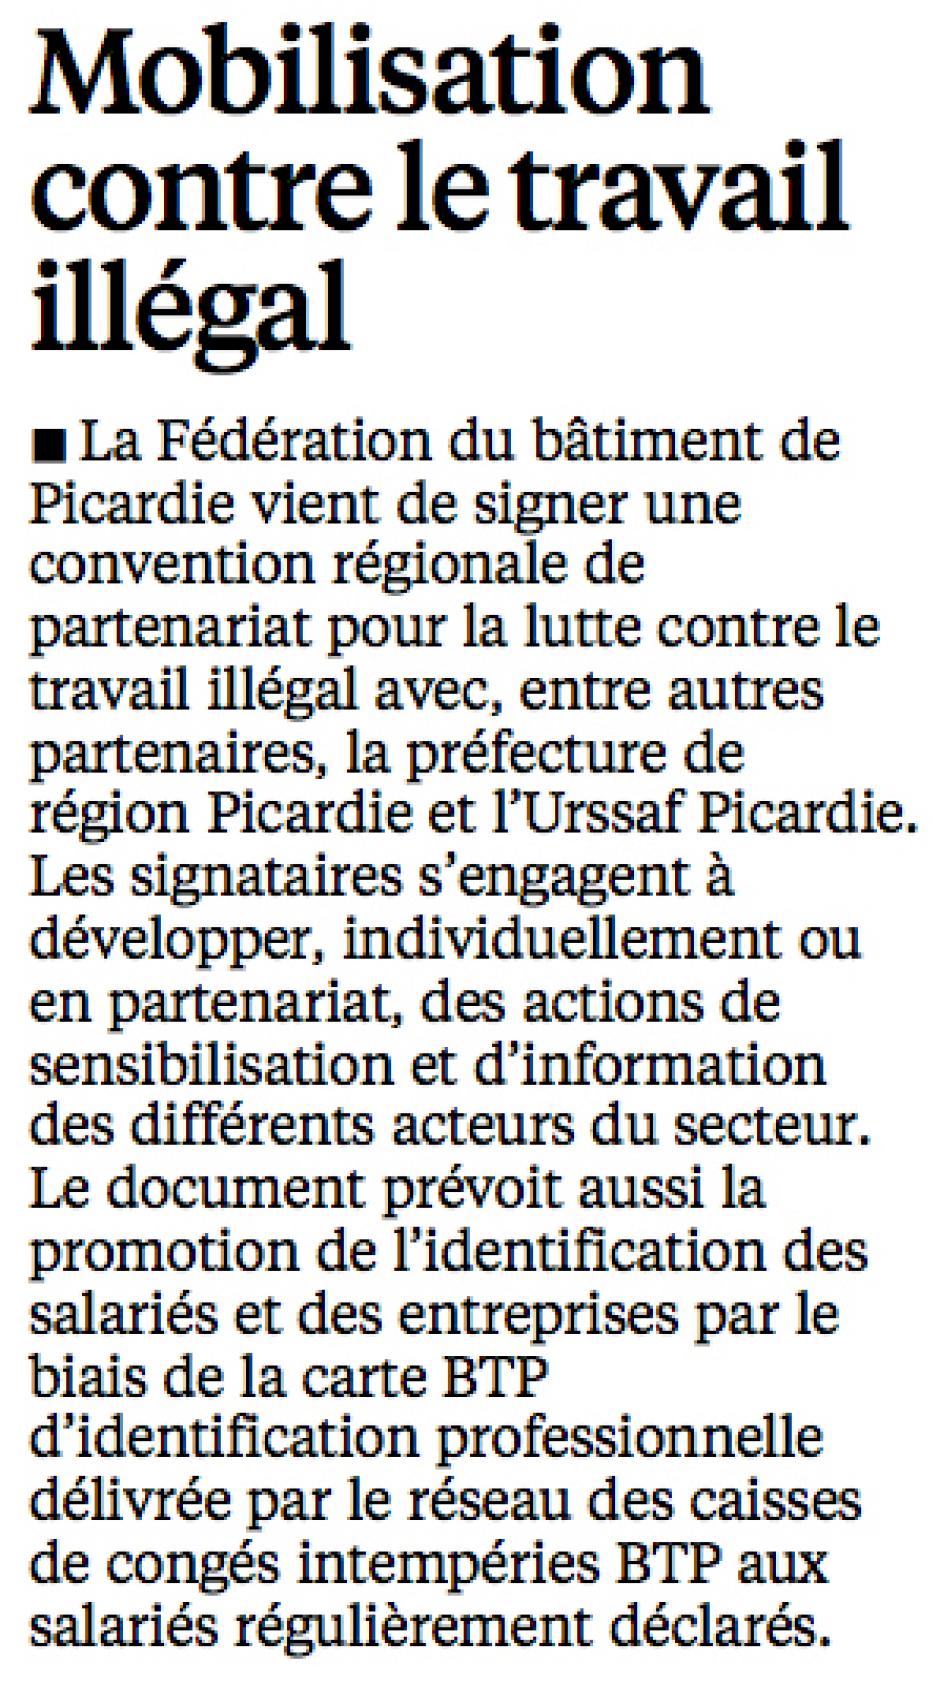 20141020-LeP-Picardie-Mobilisation contre le travail illégal